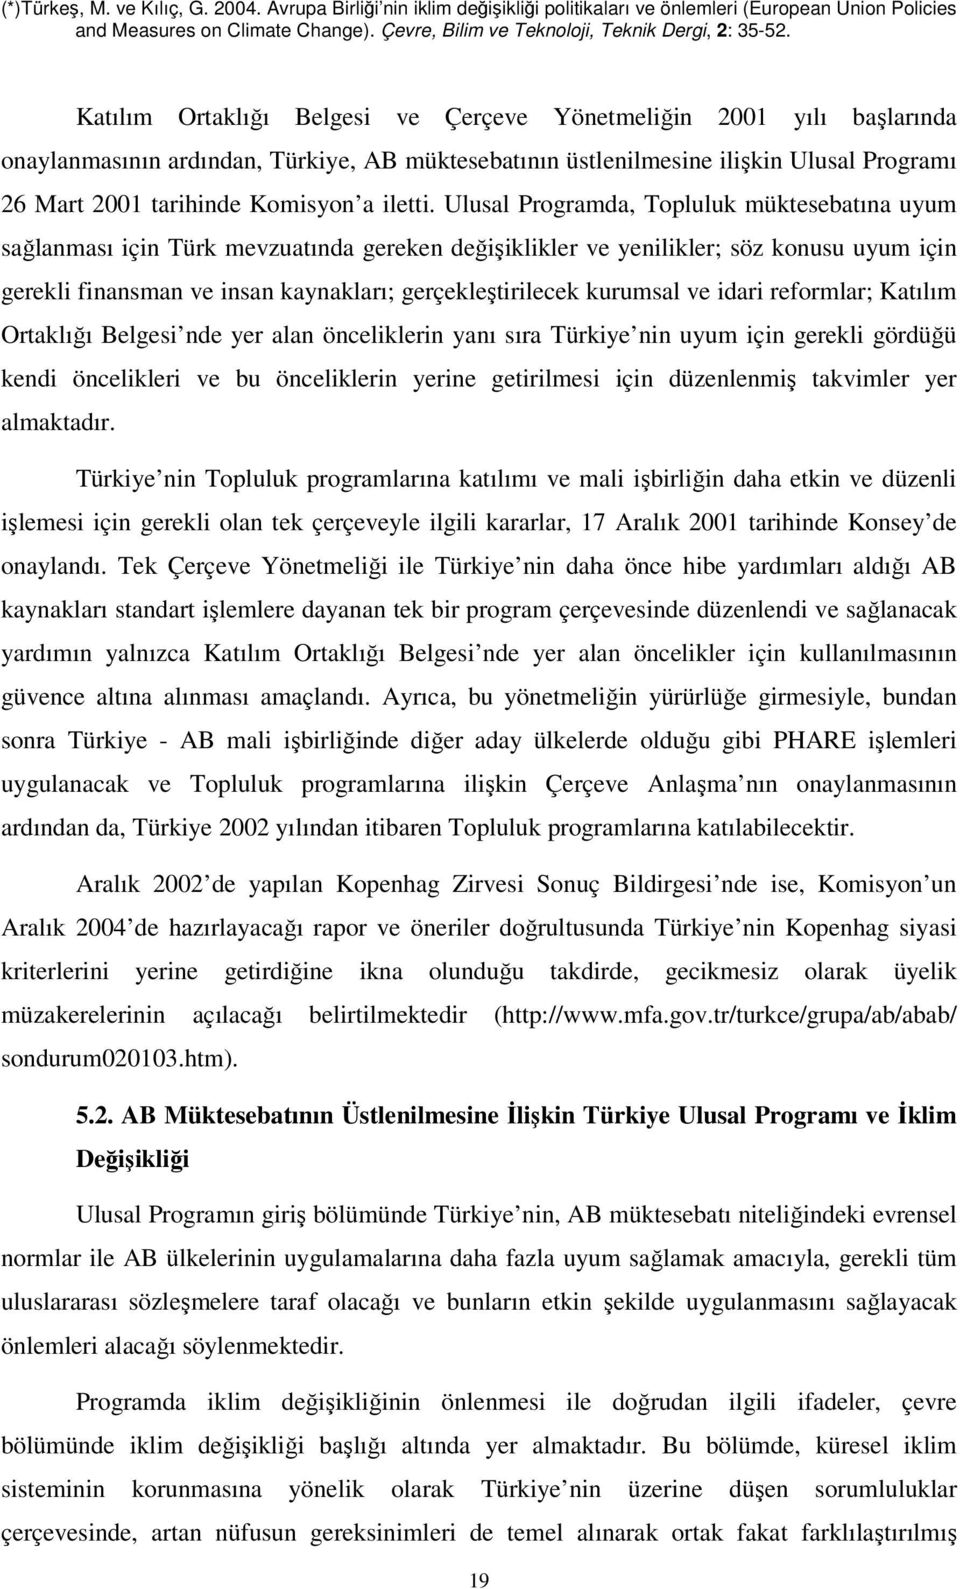 Ulusal Programda, Topluluk müktesebatına uyum sağlanması için Türk mevzuatında gereken değişiklikler ve yenilikler; söz konusu uyum için gerekli finansman ve insan kaynakları; gerçekleştirilecek